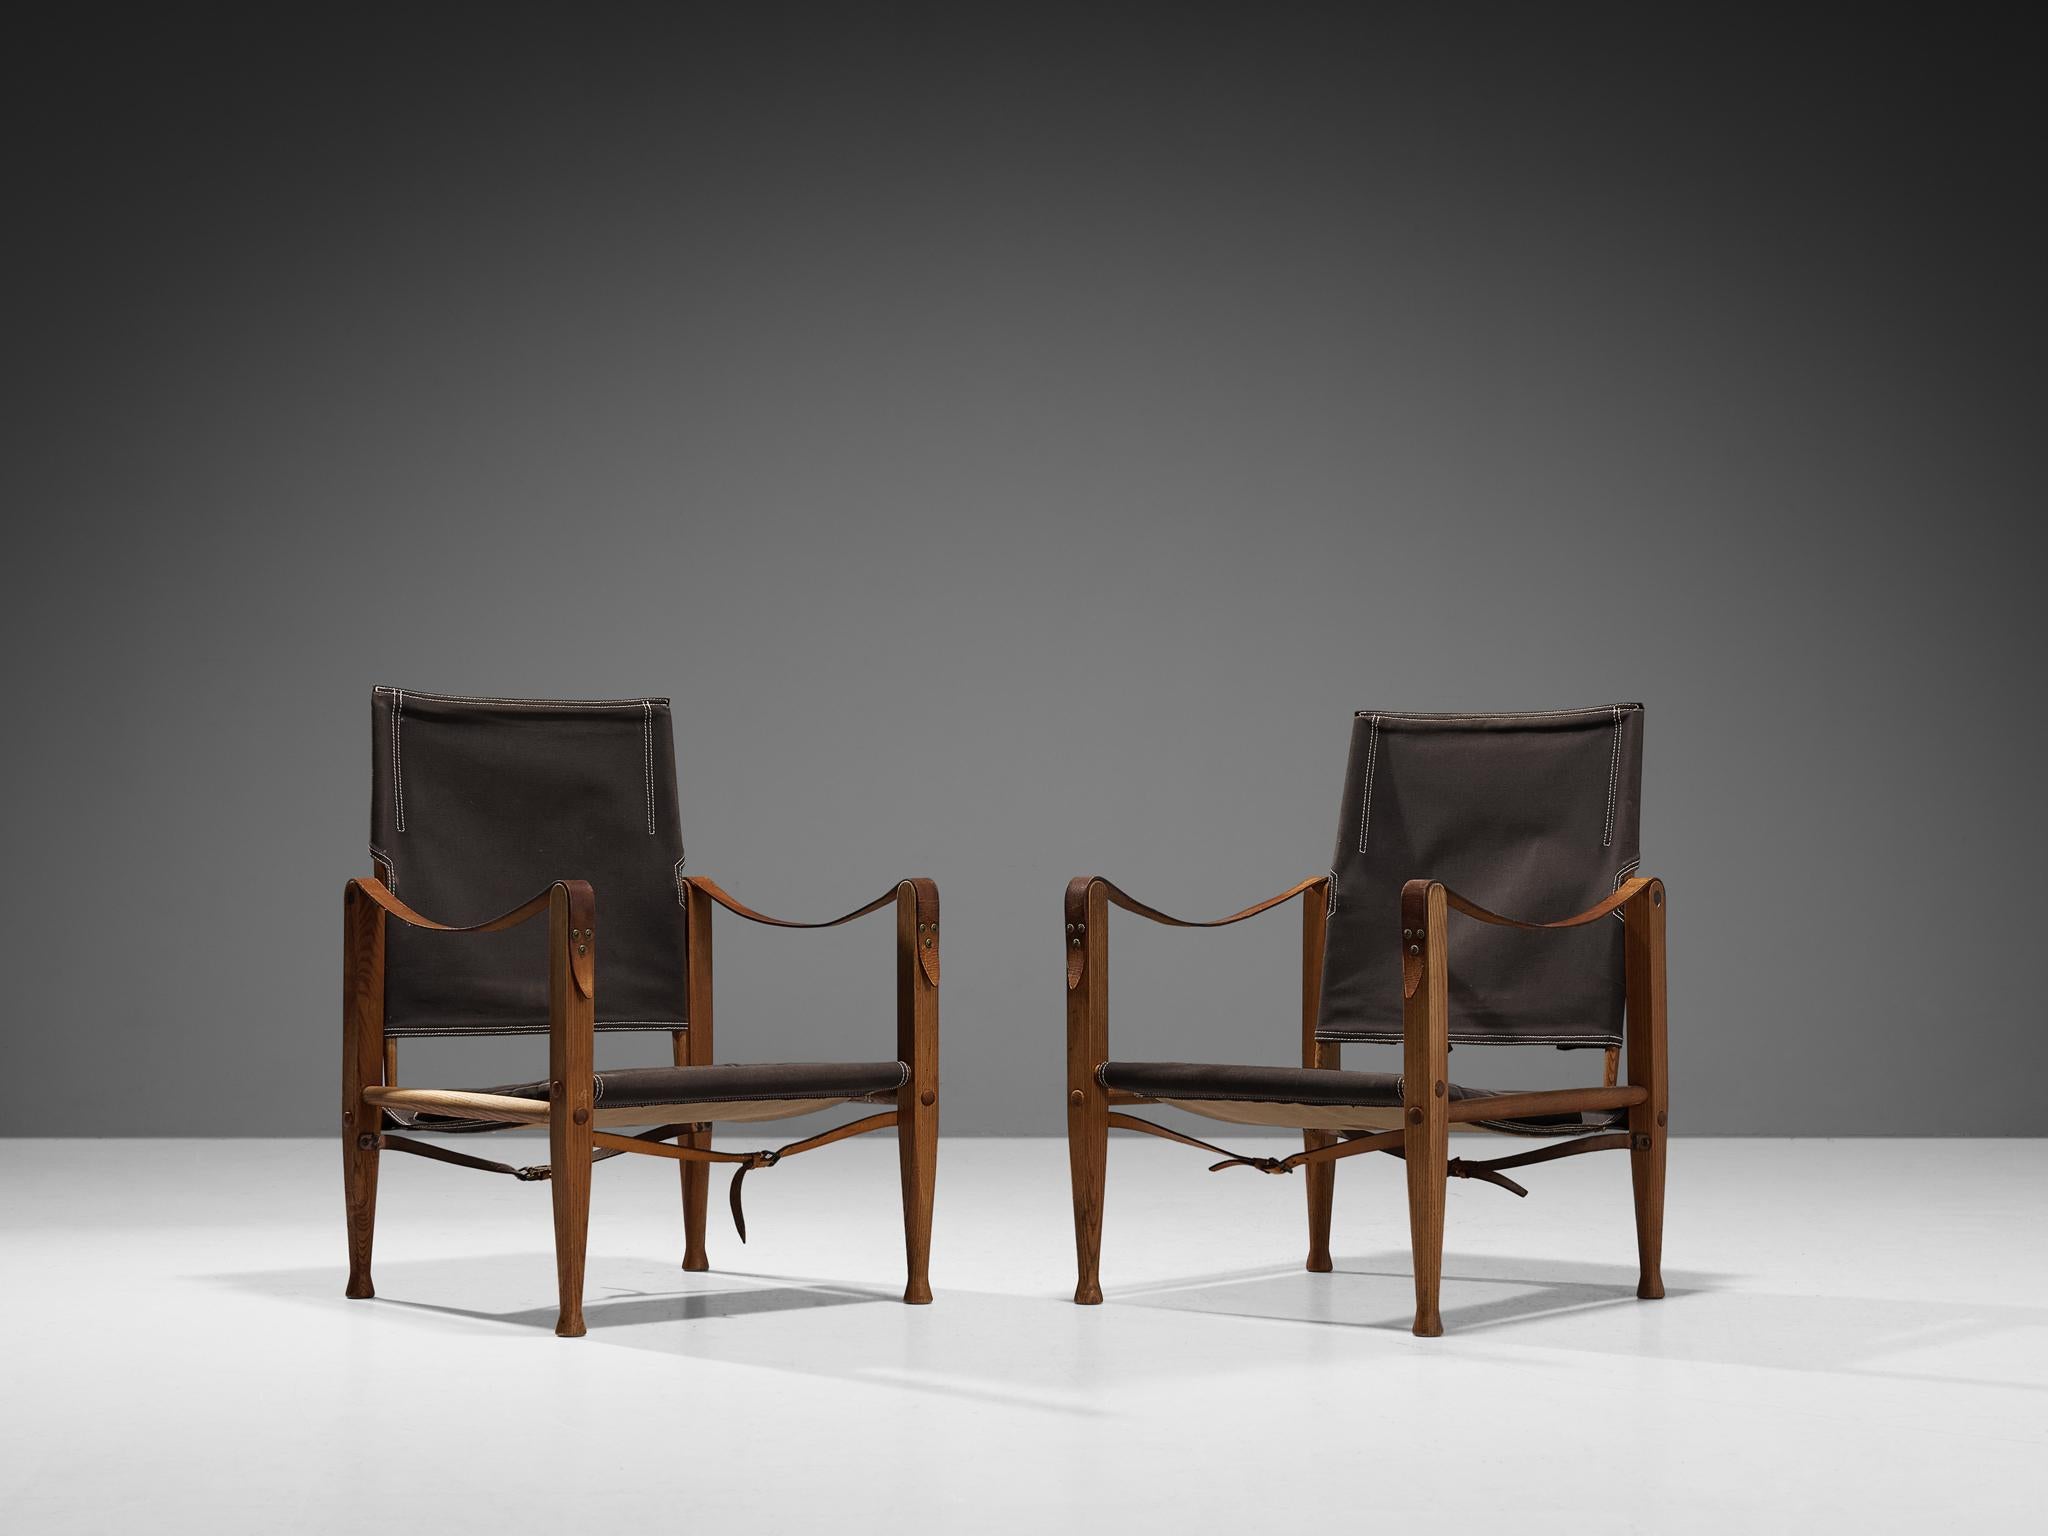 Kaare Klint pour Rud Rasmussen, paire de chaises safari modèle 'KK47000', frêne, toile, métal, laiton, cuir, Danemark, conçu en 1933 et produit dans les années 1960. 

La chaise présente des lignes très élégantes et bien conçues, en combinaison avec